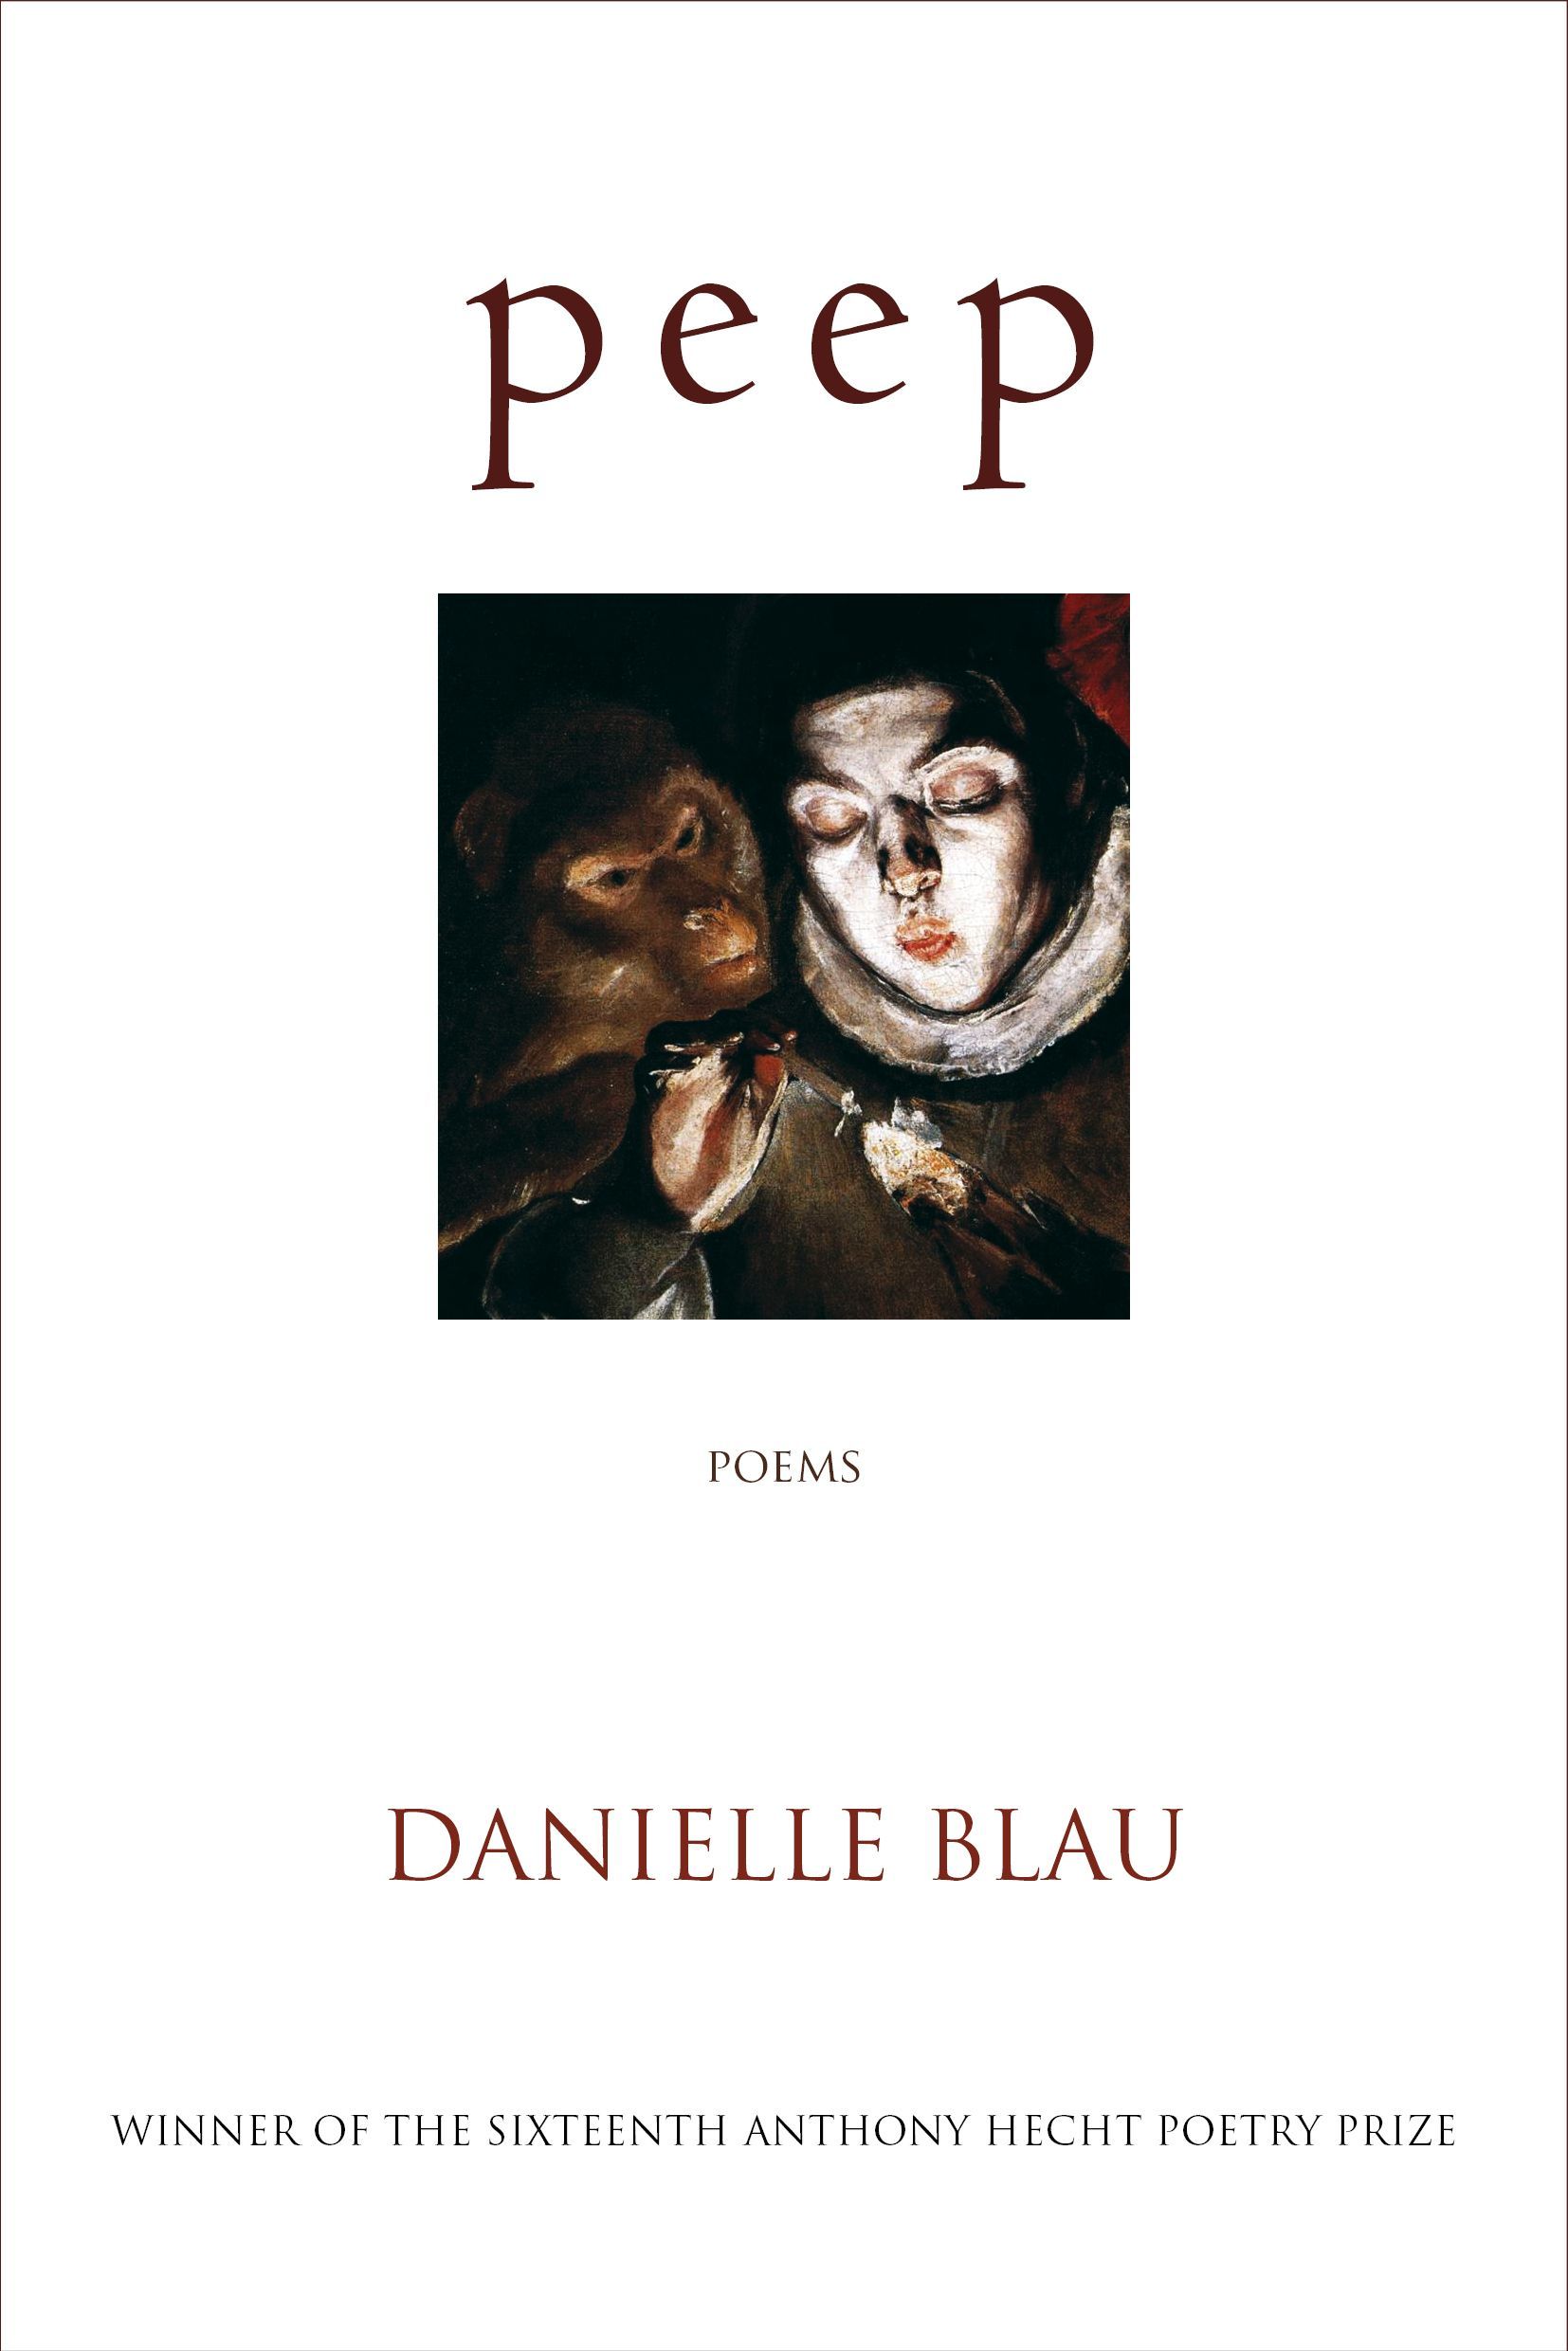 “An Awful Order”: On Danielle Blau’s “p e e p”